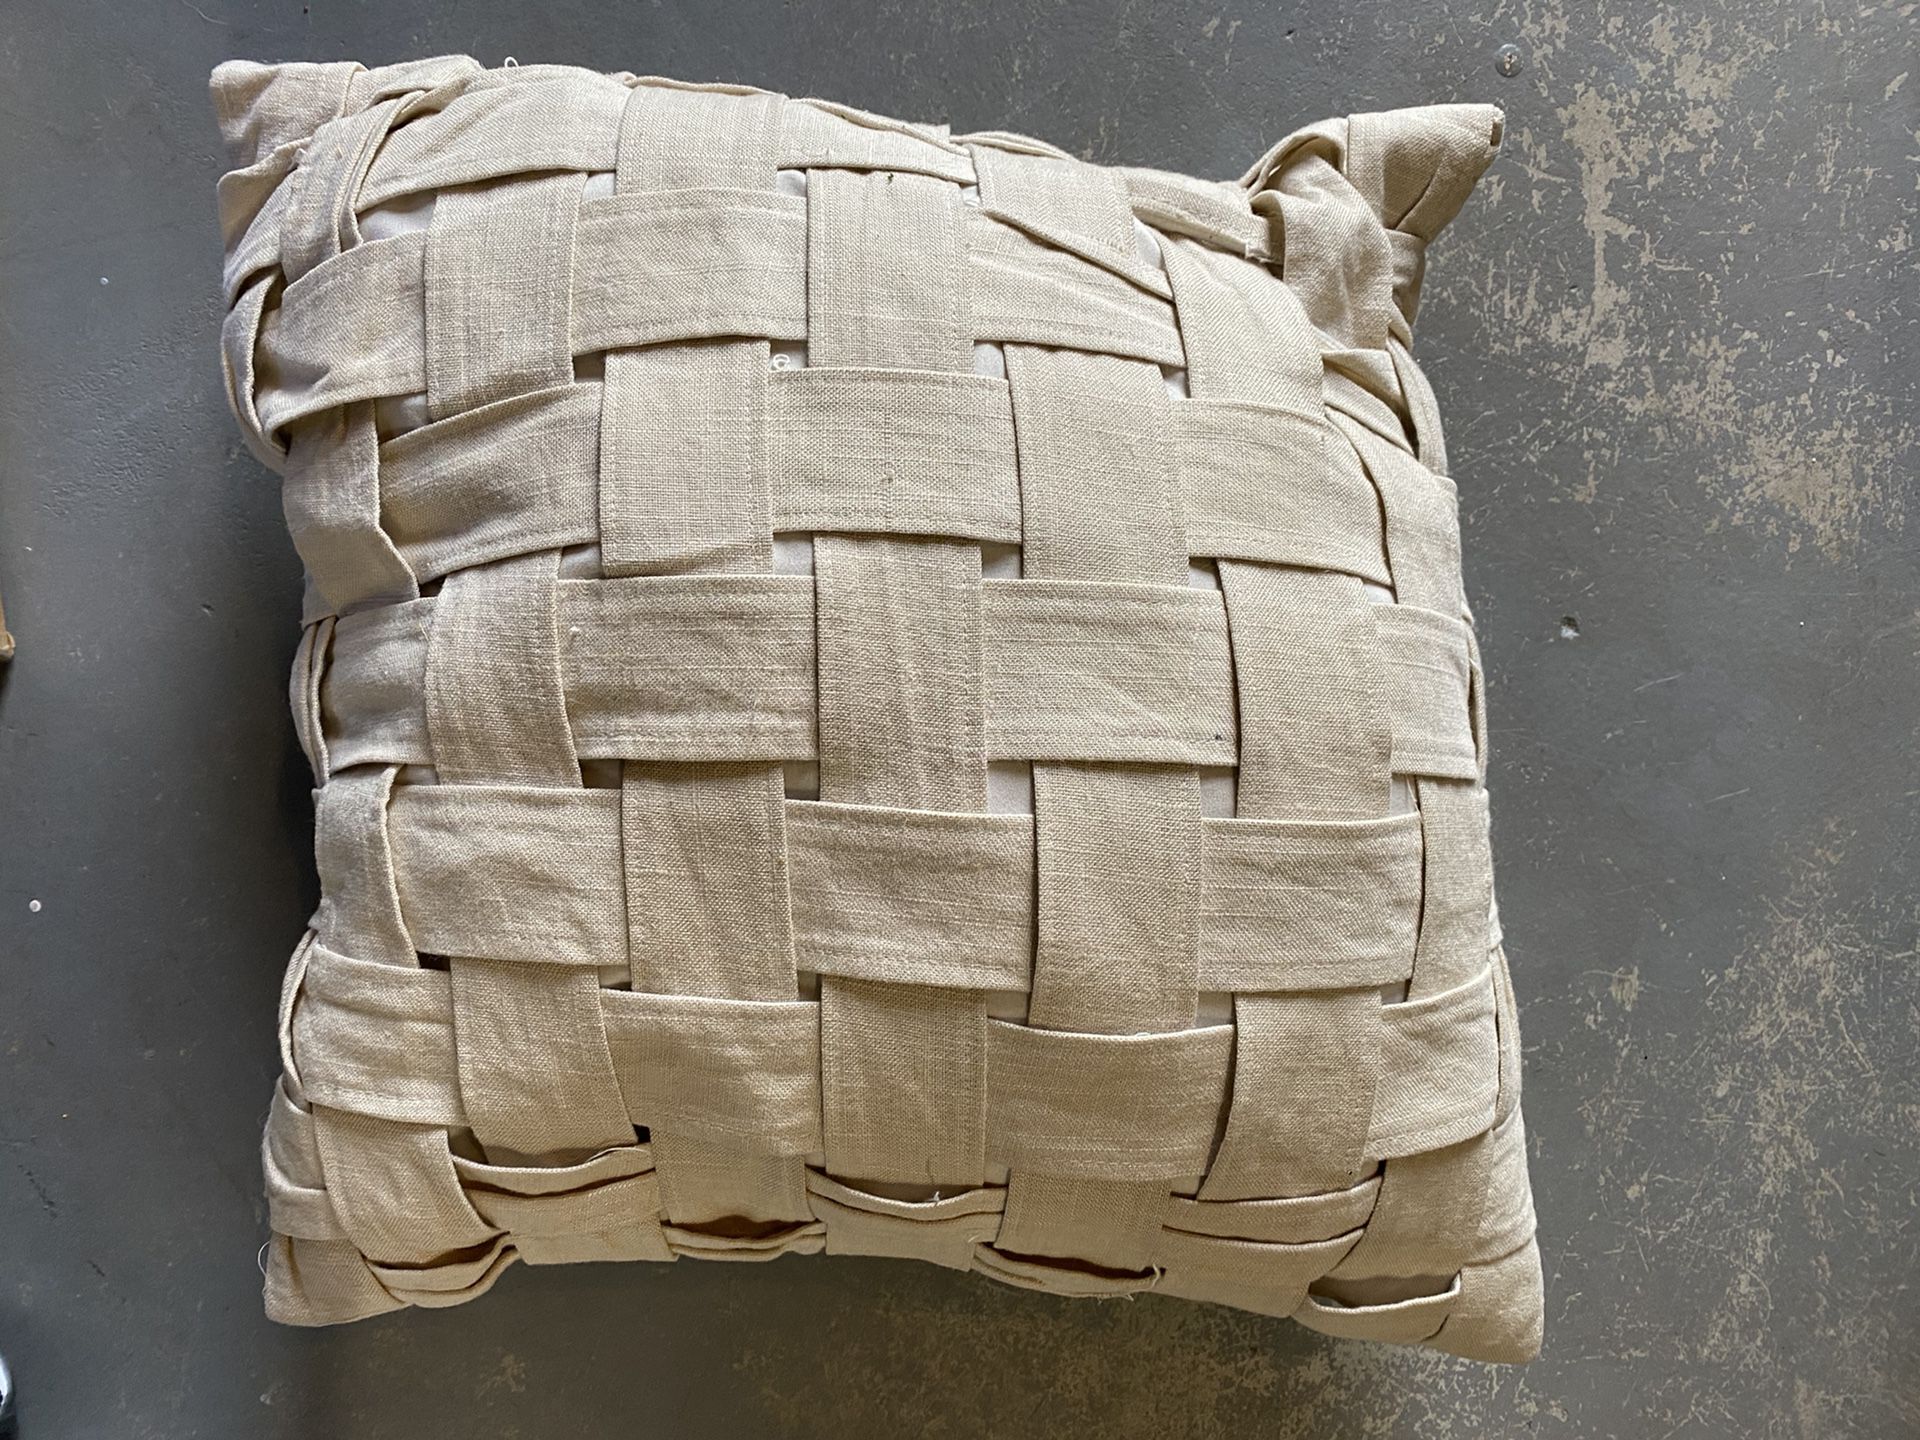 Throw / decorative pillow 16x16”